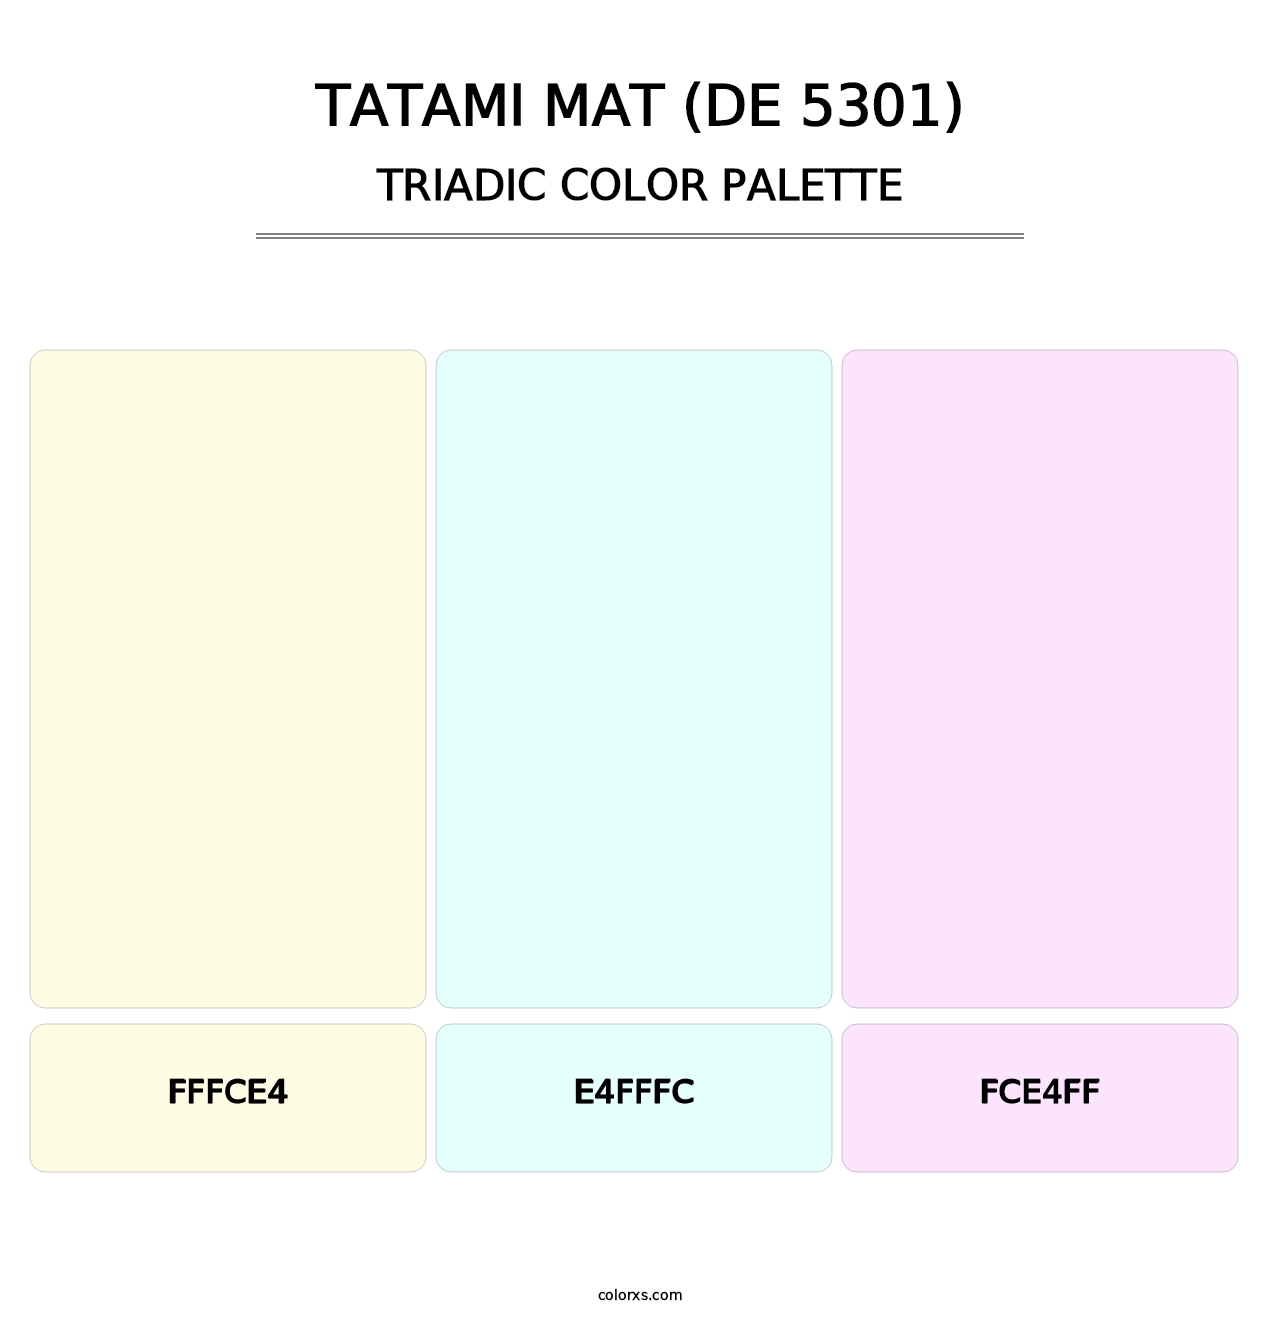 Tatami Mat (DE 5301) - Triadic Color Palette